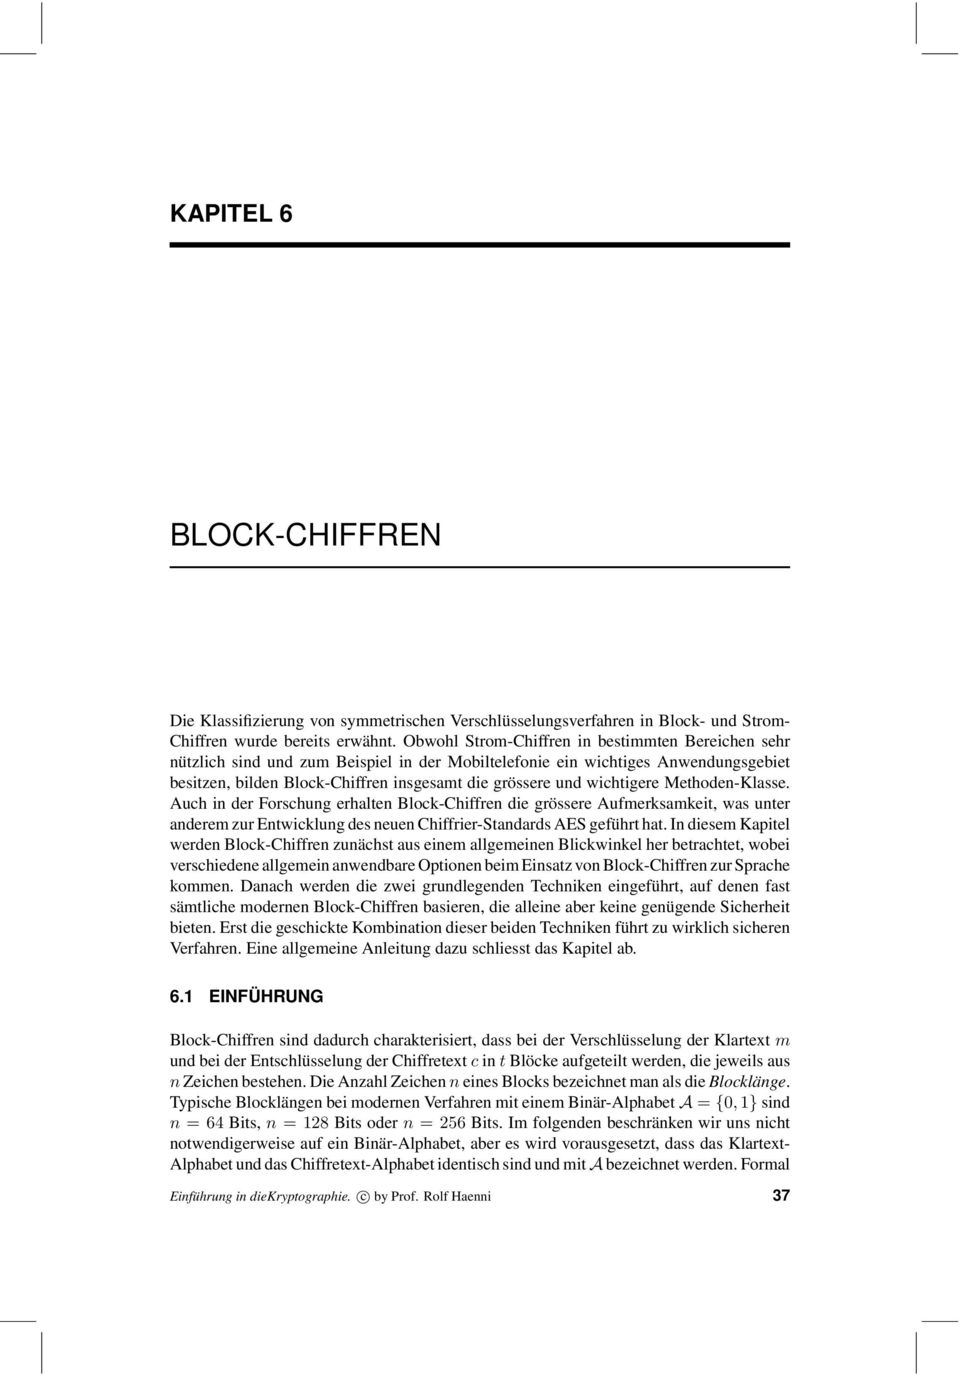 wichtigere Methoden-Klasse. Auch in der Forschung erhalten Block-Chiffren die grössere Aufmerksamkeit, was unter anderem zur Entwicklung des neuen Chiffrier-Standards AES geführt hat.